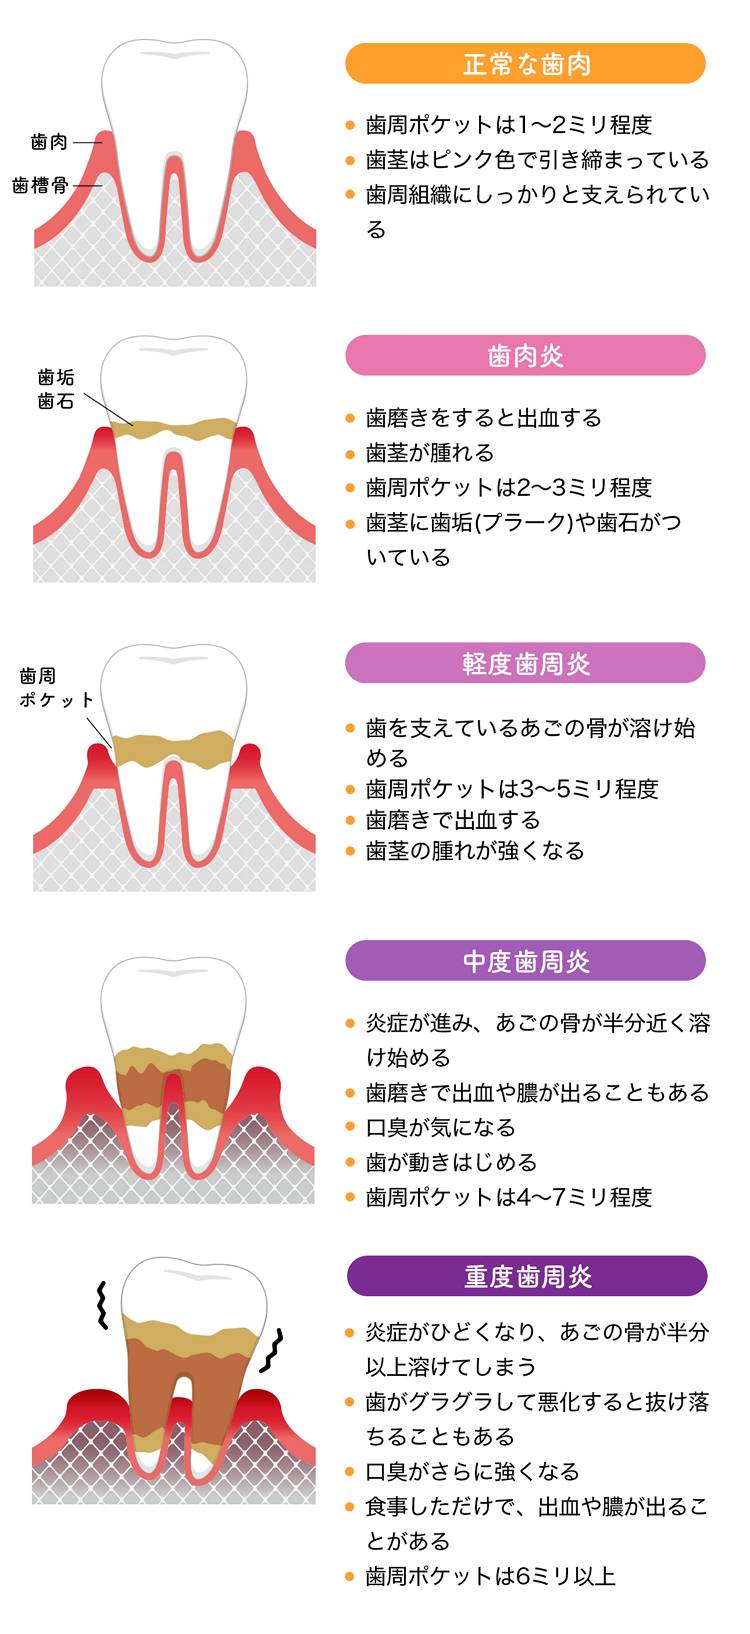 歯医者さんが考える歯周病の進行度合い